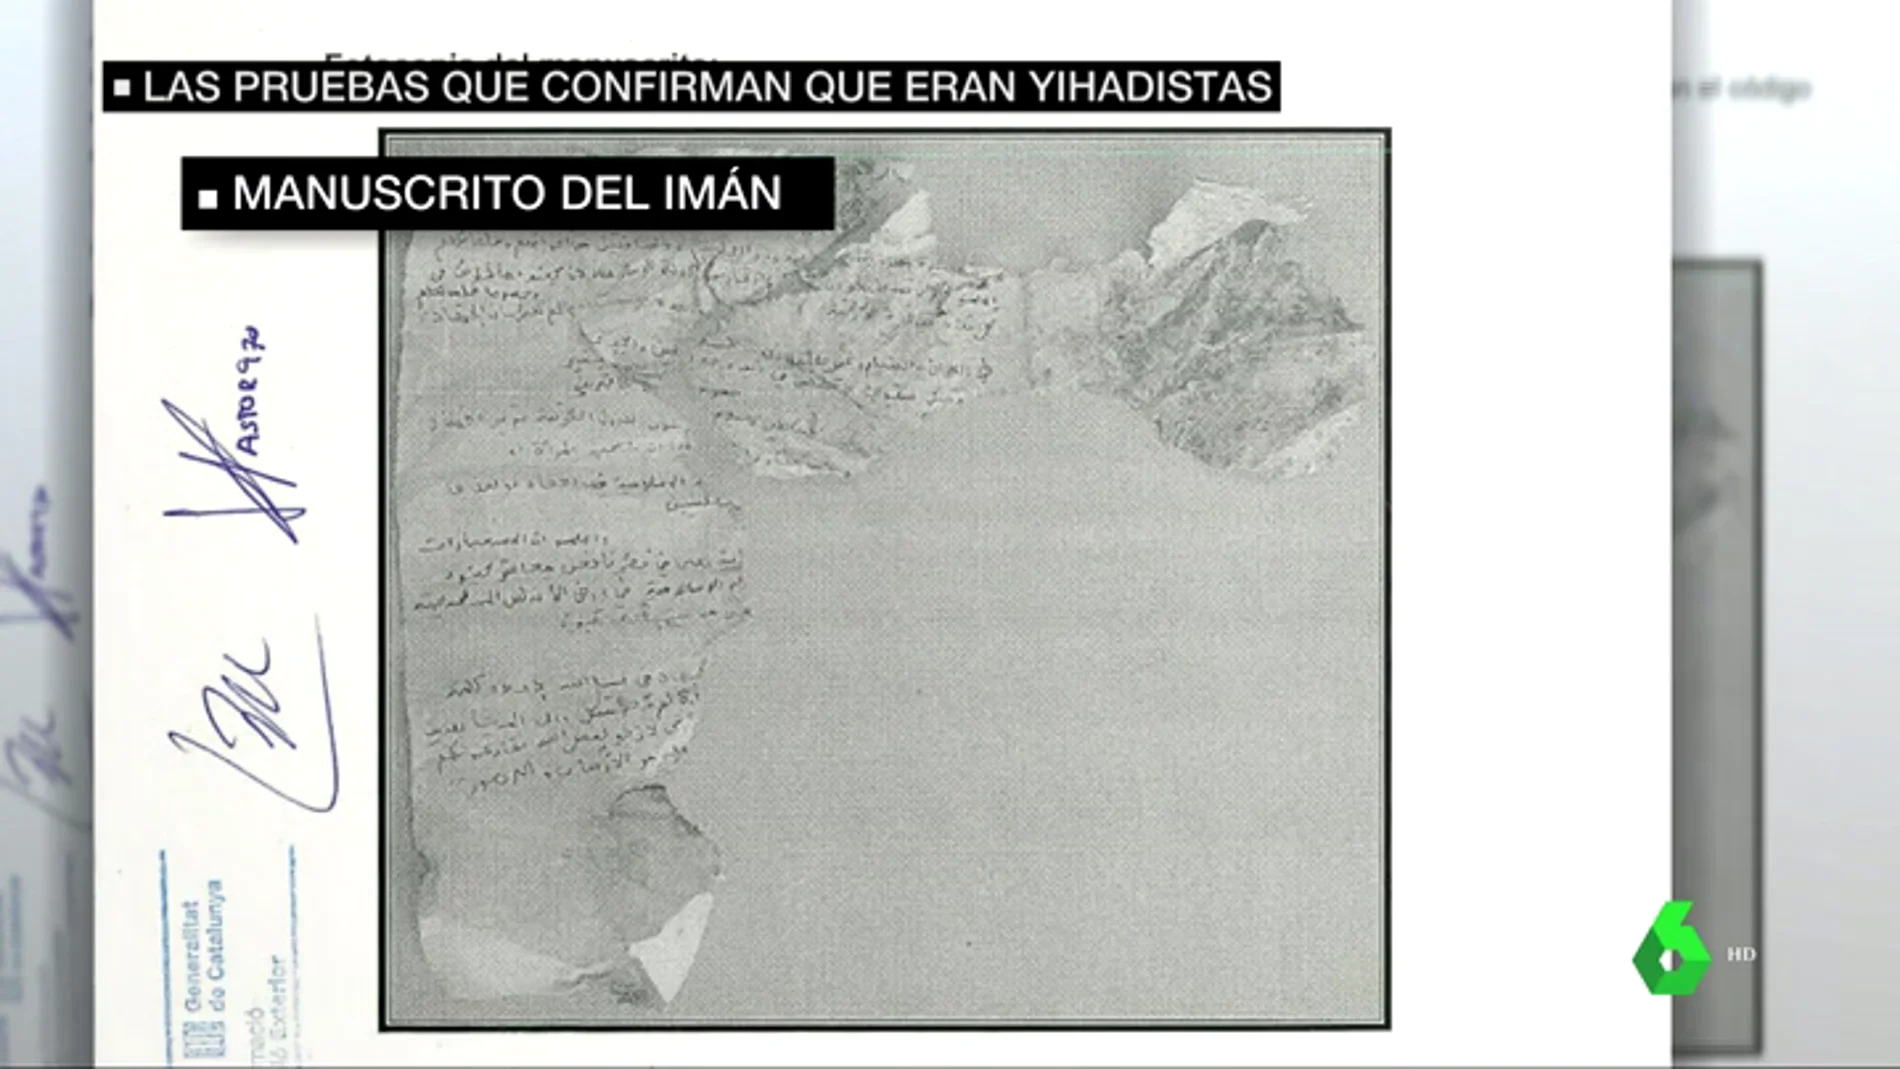 Estos son los manuscritos del iman de Ripoll que encontraron en Alcanar: "La Yihad es un deber obligatorio"